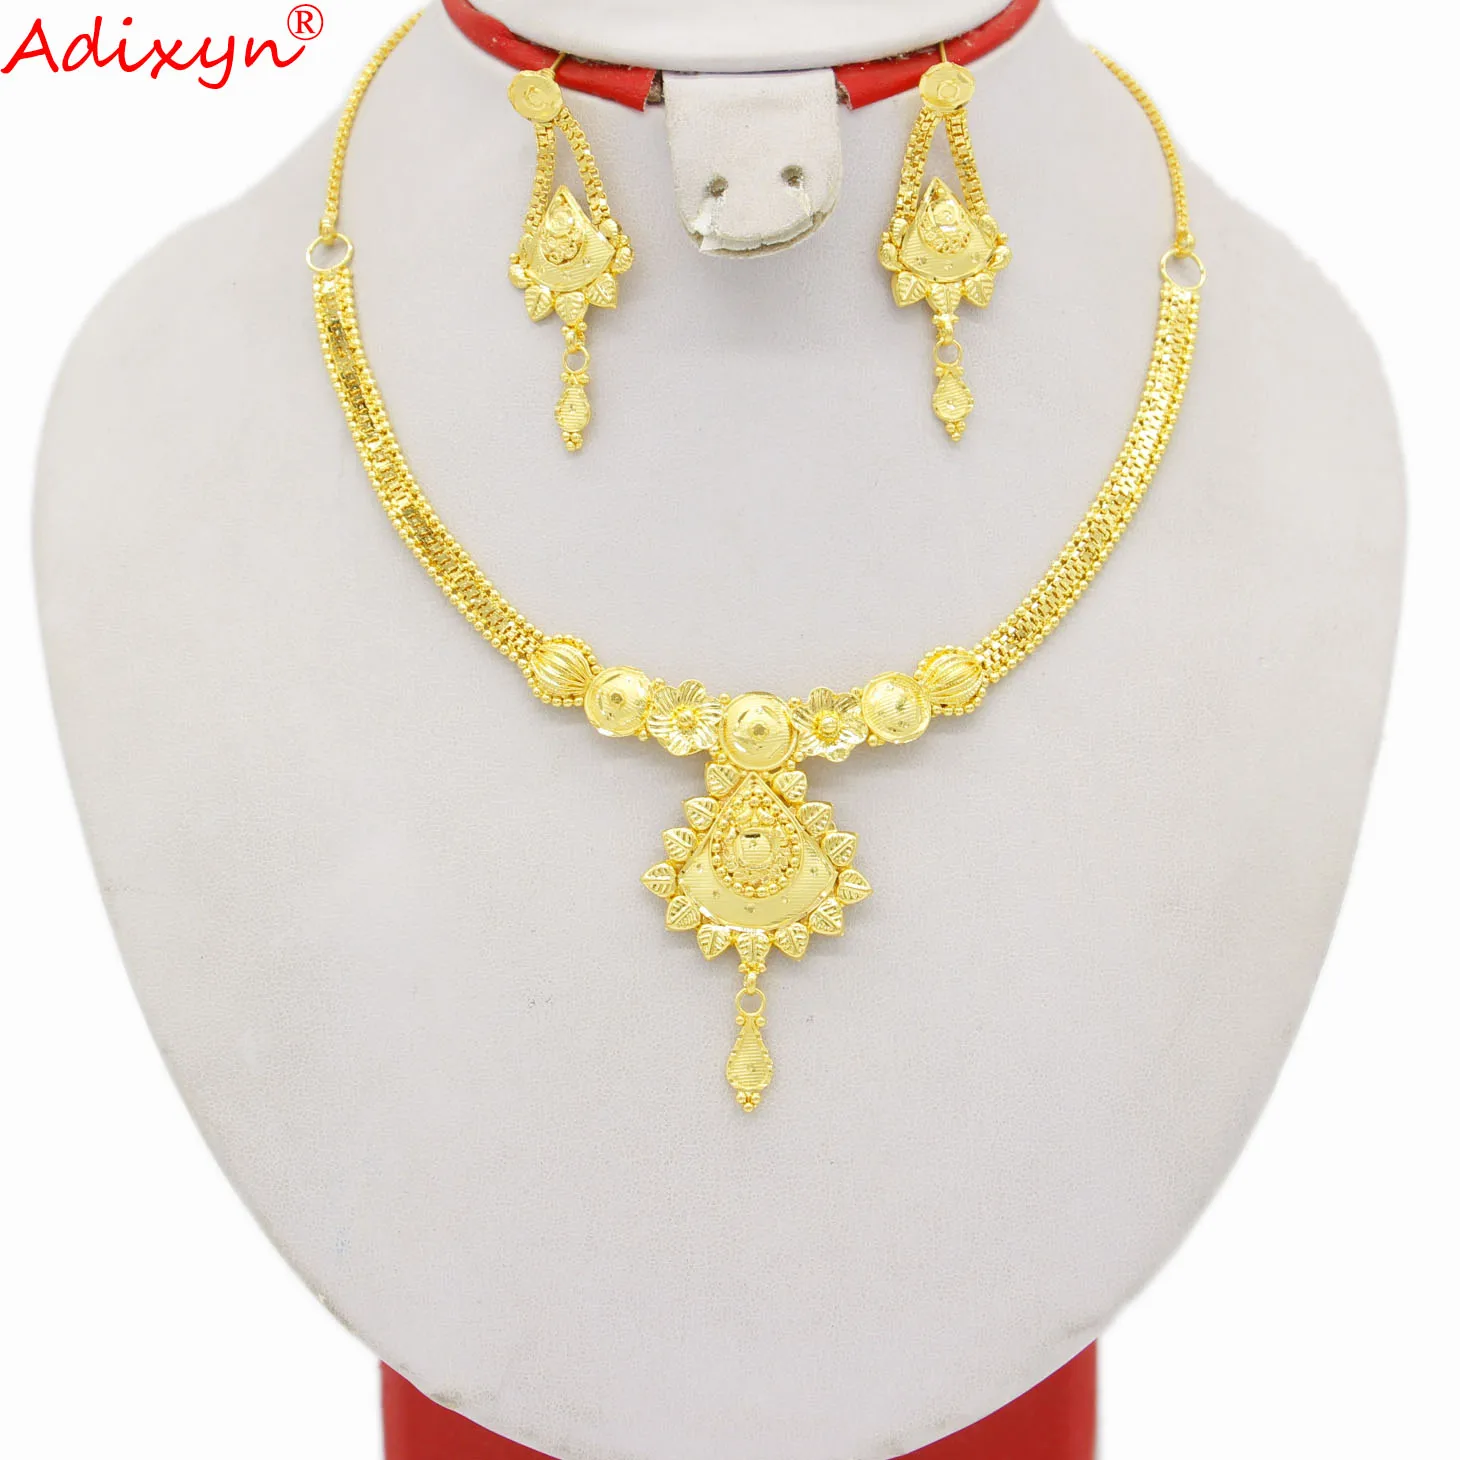 Adixyn арабский 24k золотой цвет/медный цветок дизайн ювелирные изделия для вечеринки для женщин девочек серьги ожерелье набор Рождественские ...